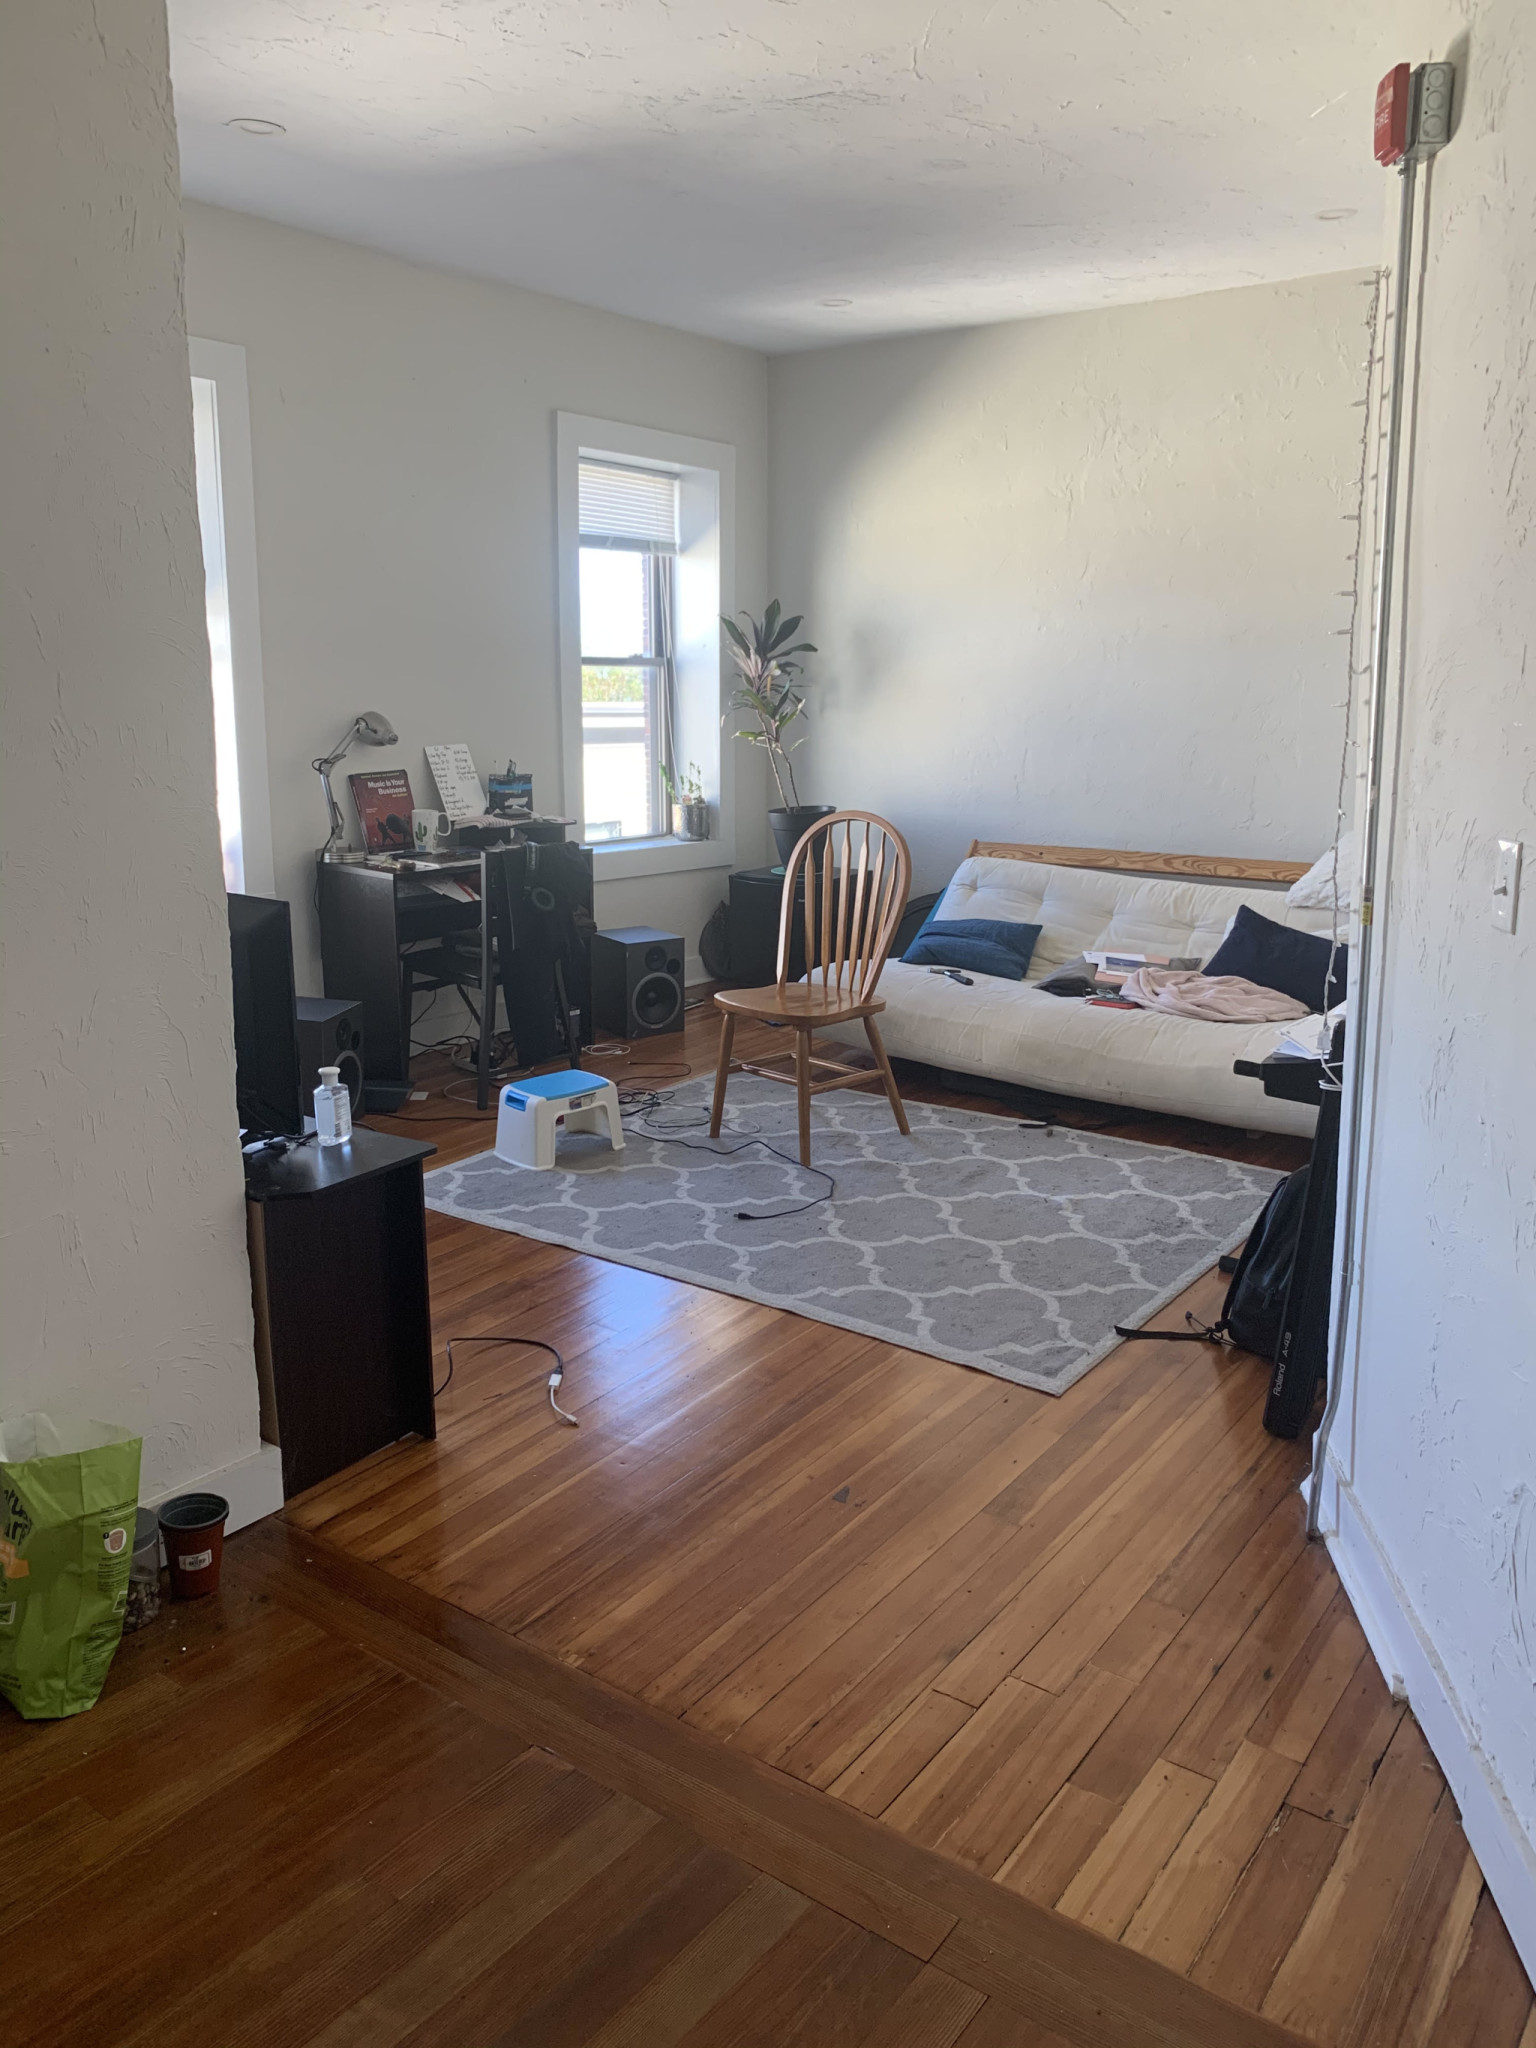 Photos of apartment on Hesston Ter.,Boston MA 02125